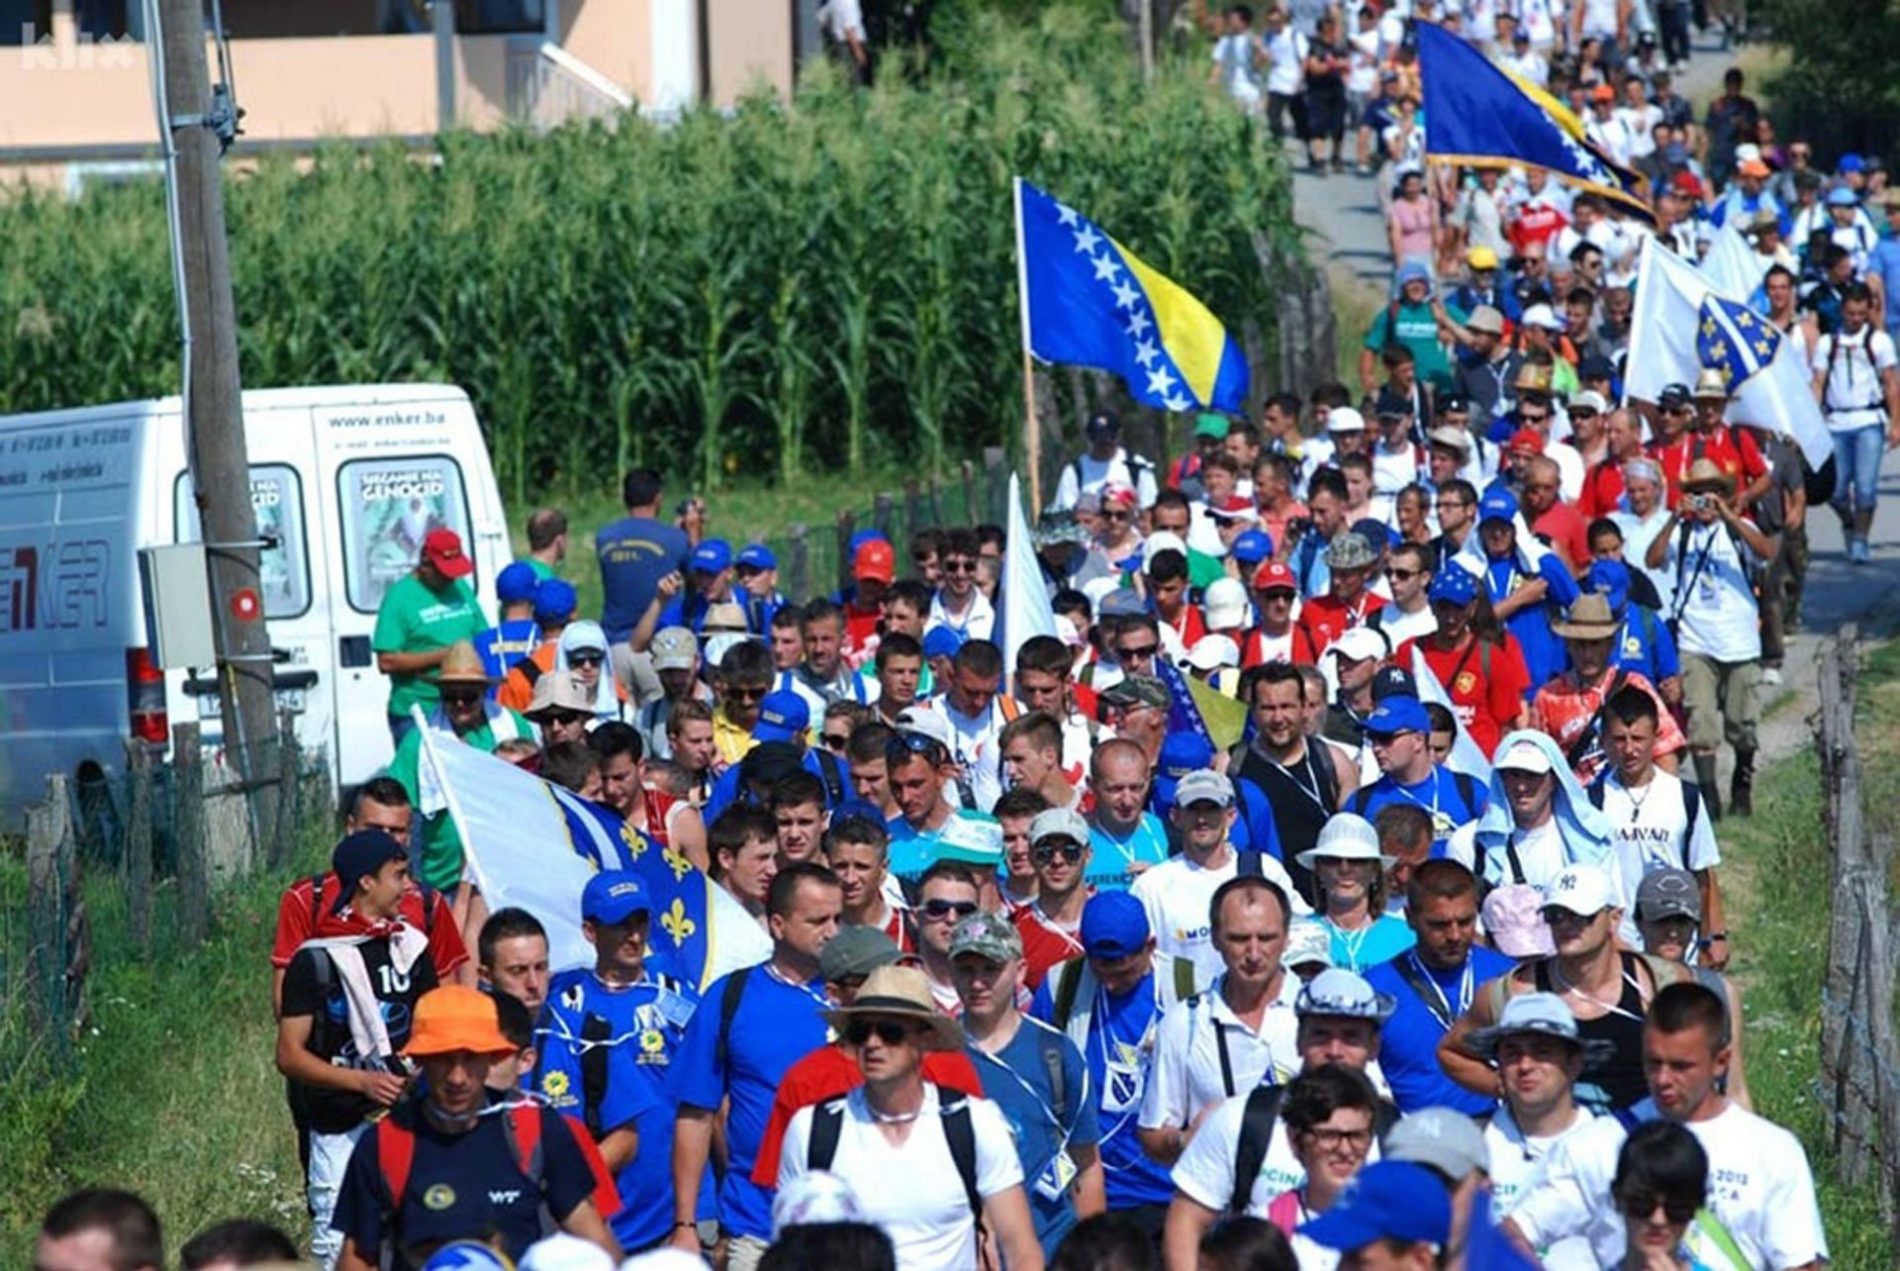 U toku pripreme za obilježavanje godišnjice genocida u Srebrenici, na Maršu mira oko pet hiljada učesnika